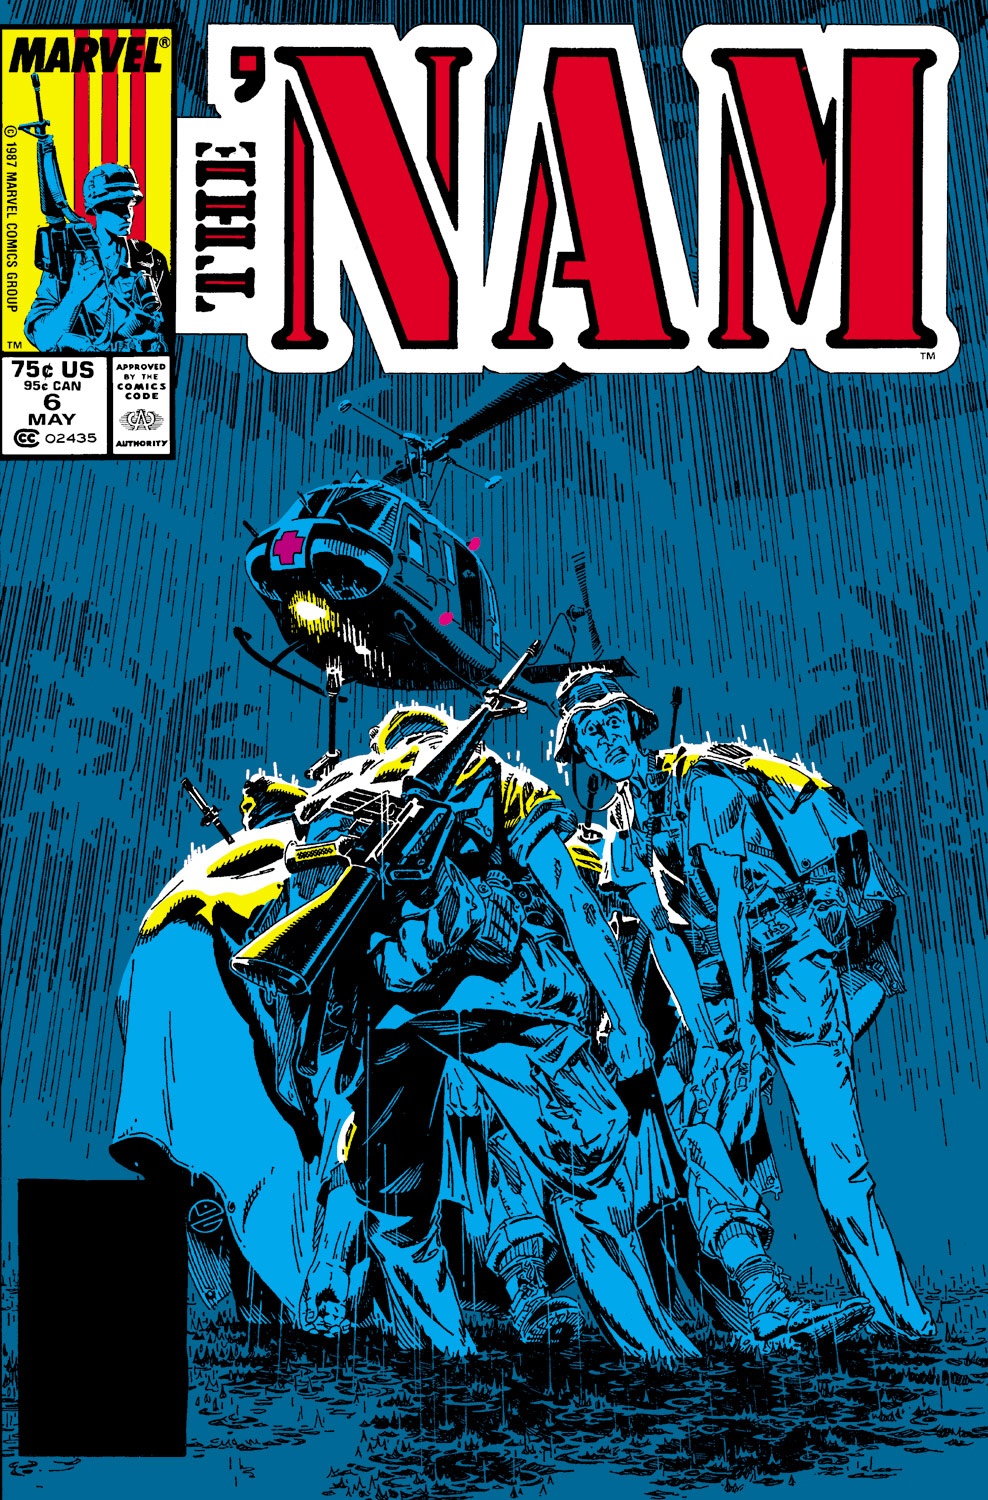 The 'NAM (1986) #6